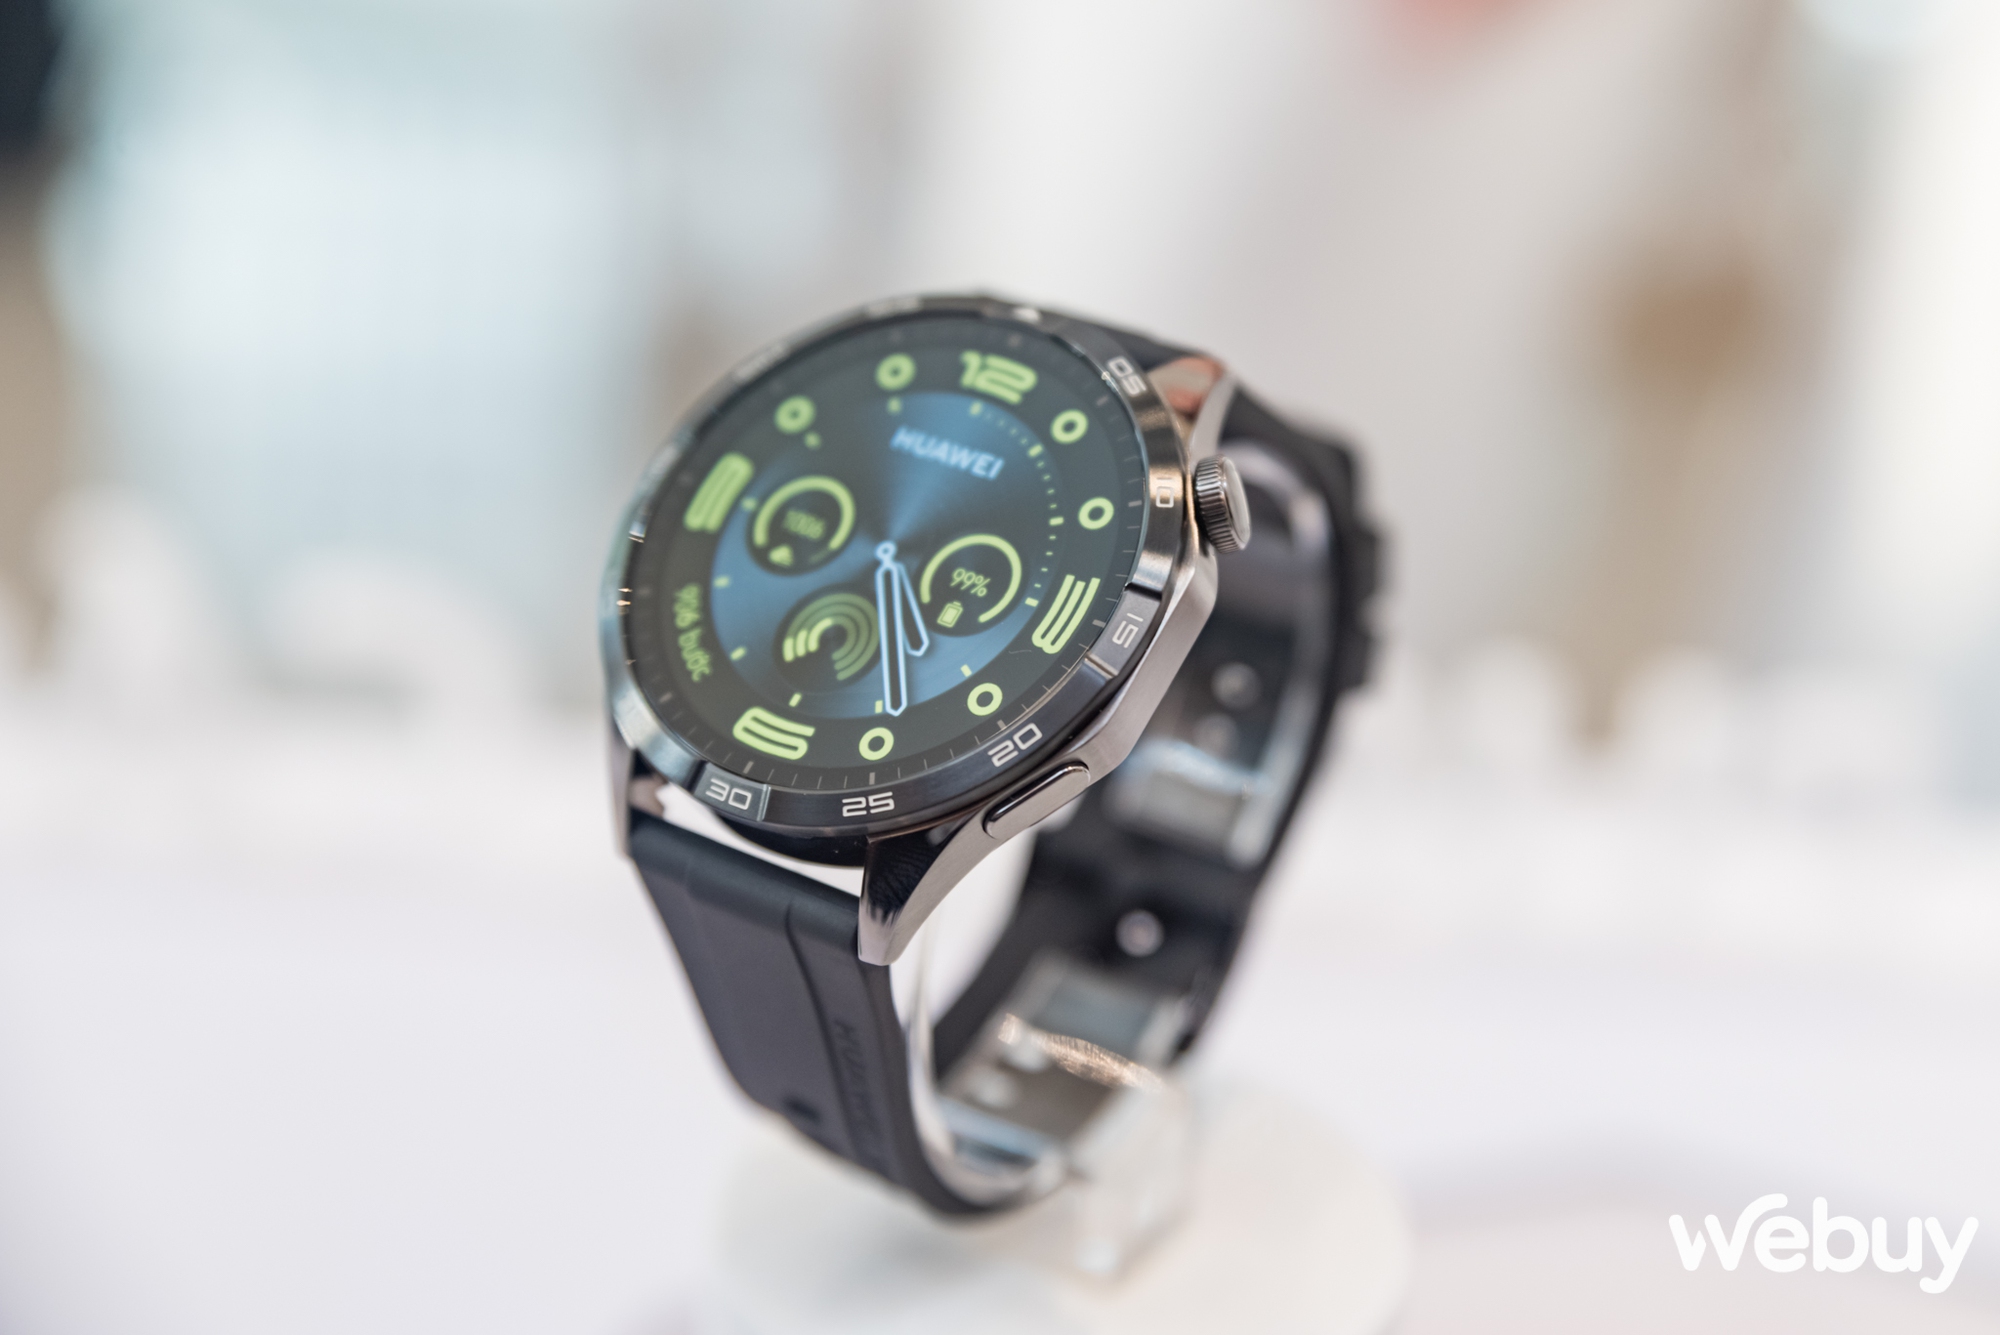 Huawei ra mắt Watch GT 4: Thiết kế đa phong cách, nhiều cải tiến sức khoẻ lẫn thể thao, giá từ 6 triệu đồng - Ảnh 5.